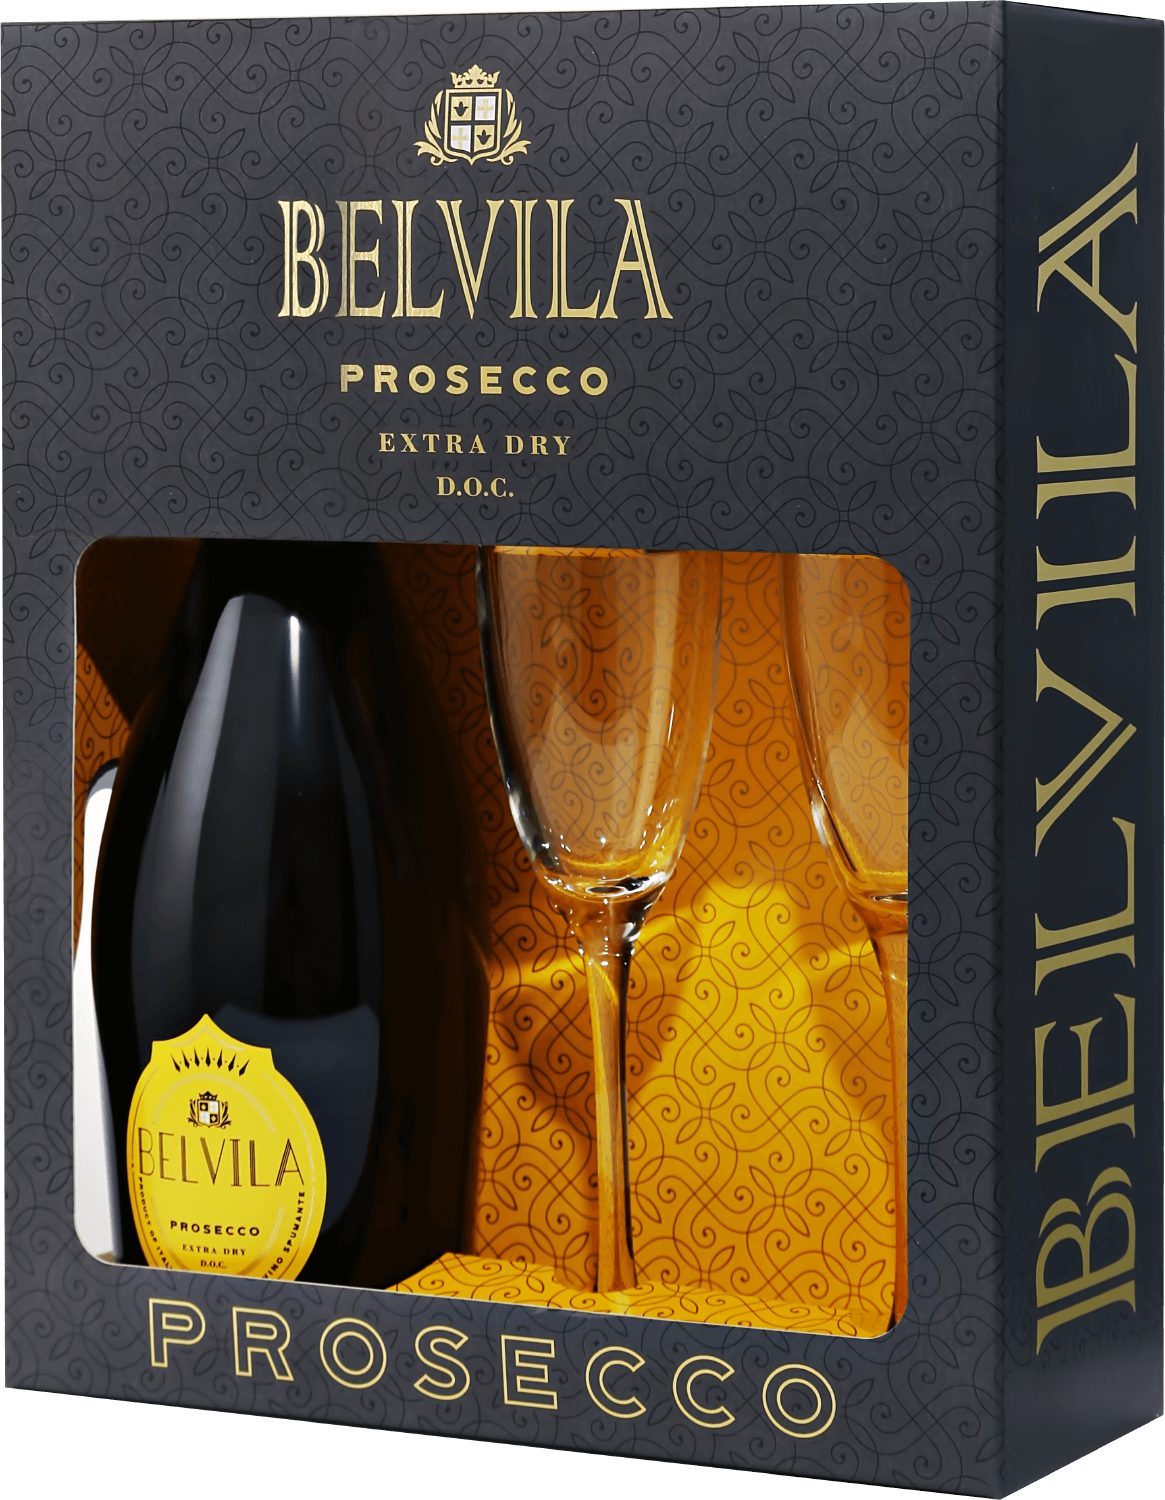 Belvila Prosecco DOC Spumante Extra Dry Villa Degli Olmi (gift box) soave doc spumante extra dry villa degli olmi